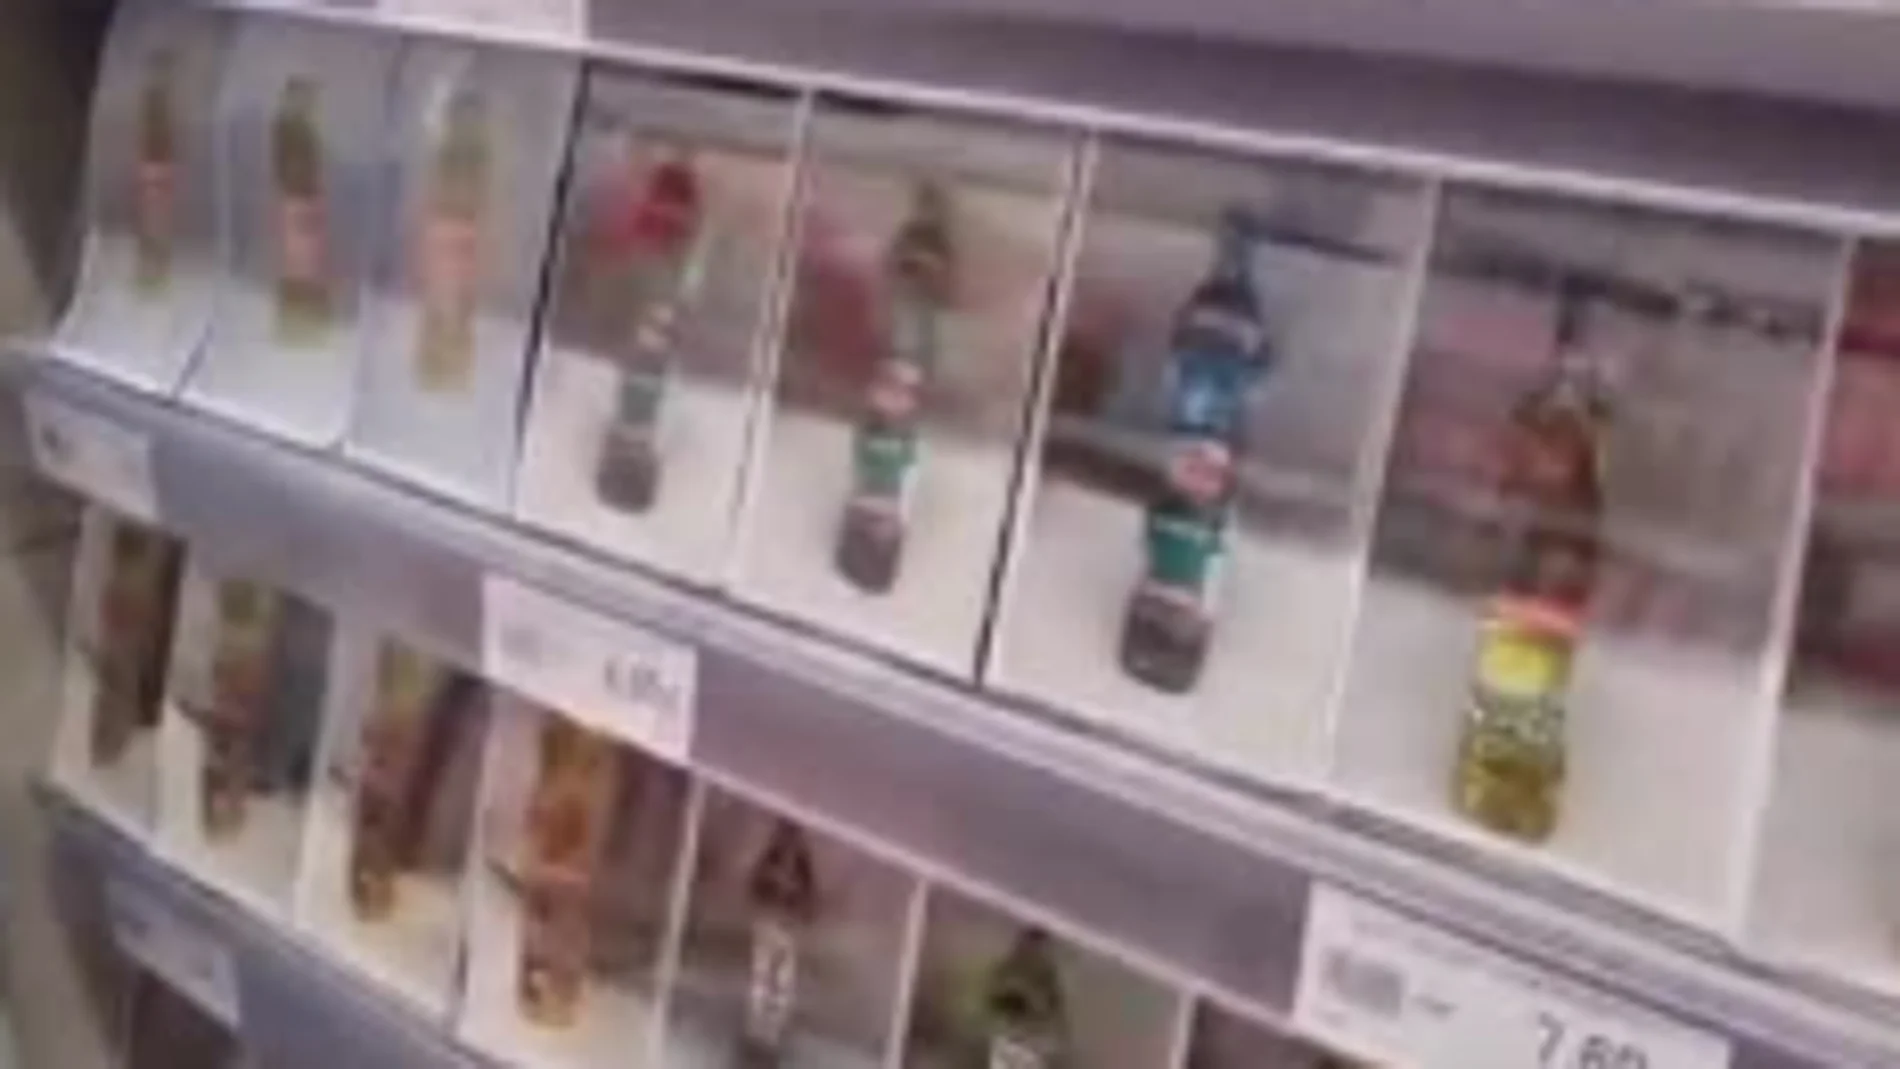 Un supermercado de Sevilla sustituye las botellas de aceite por fotos para evitar los robos de los clientes